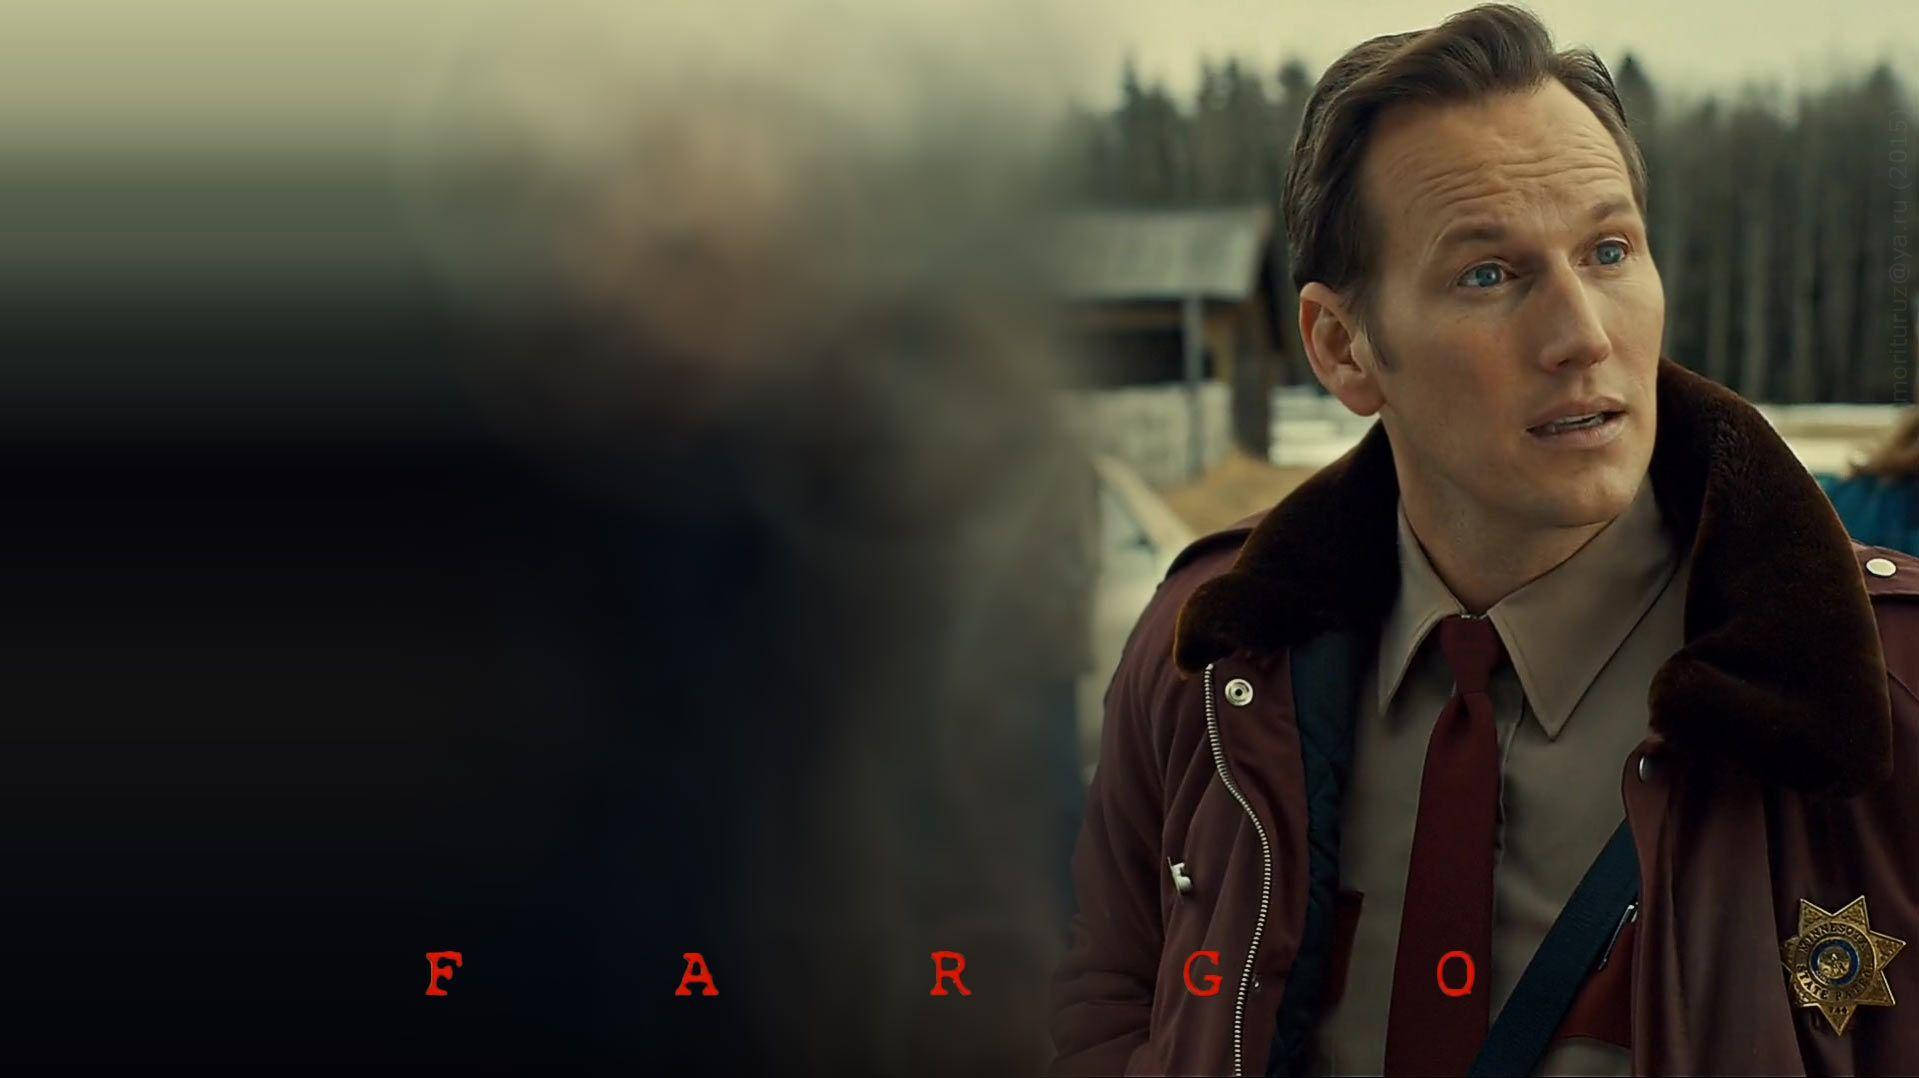 Fondode Pantalla De Fargo Protagonizado Por Un Hombre. Fondo de pantalla